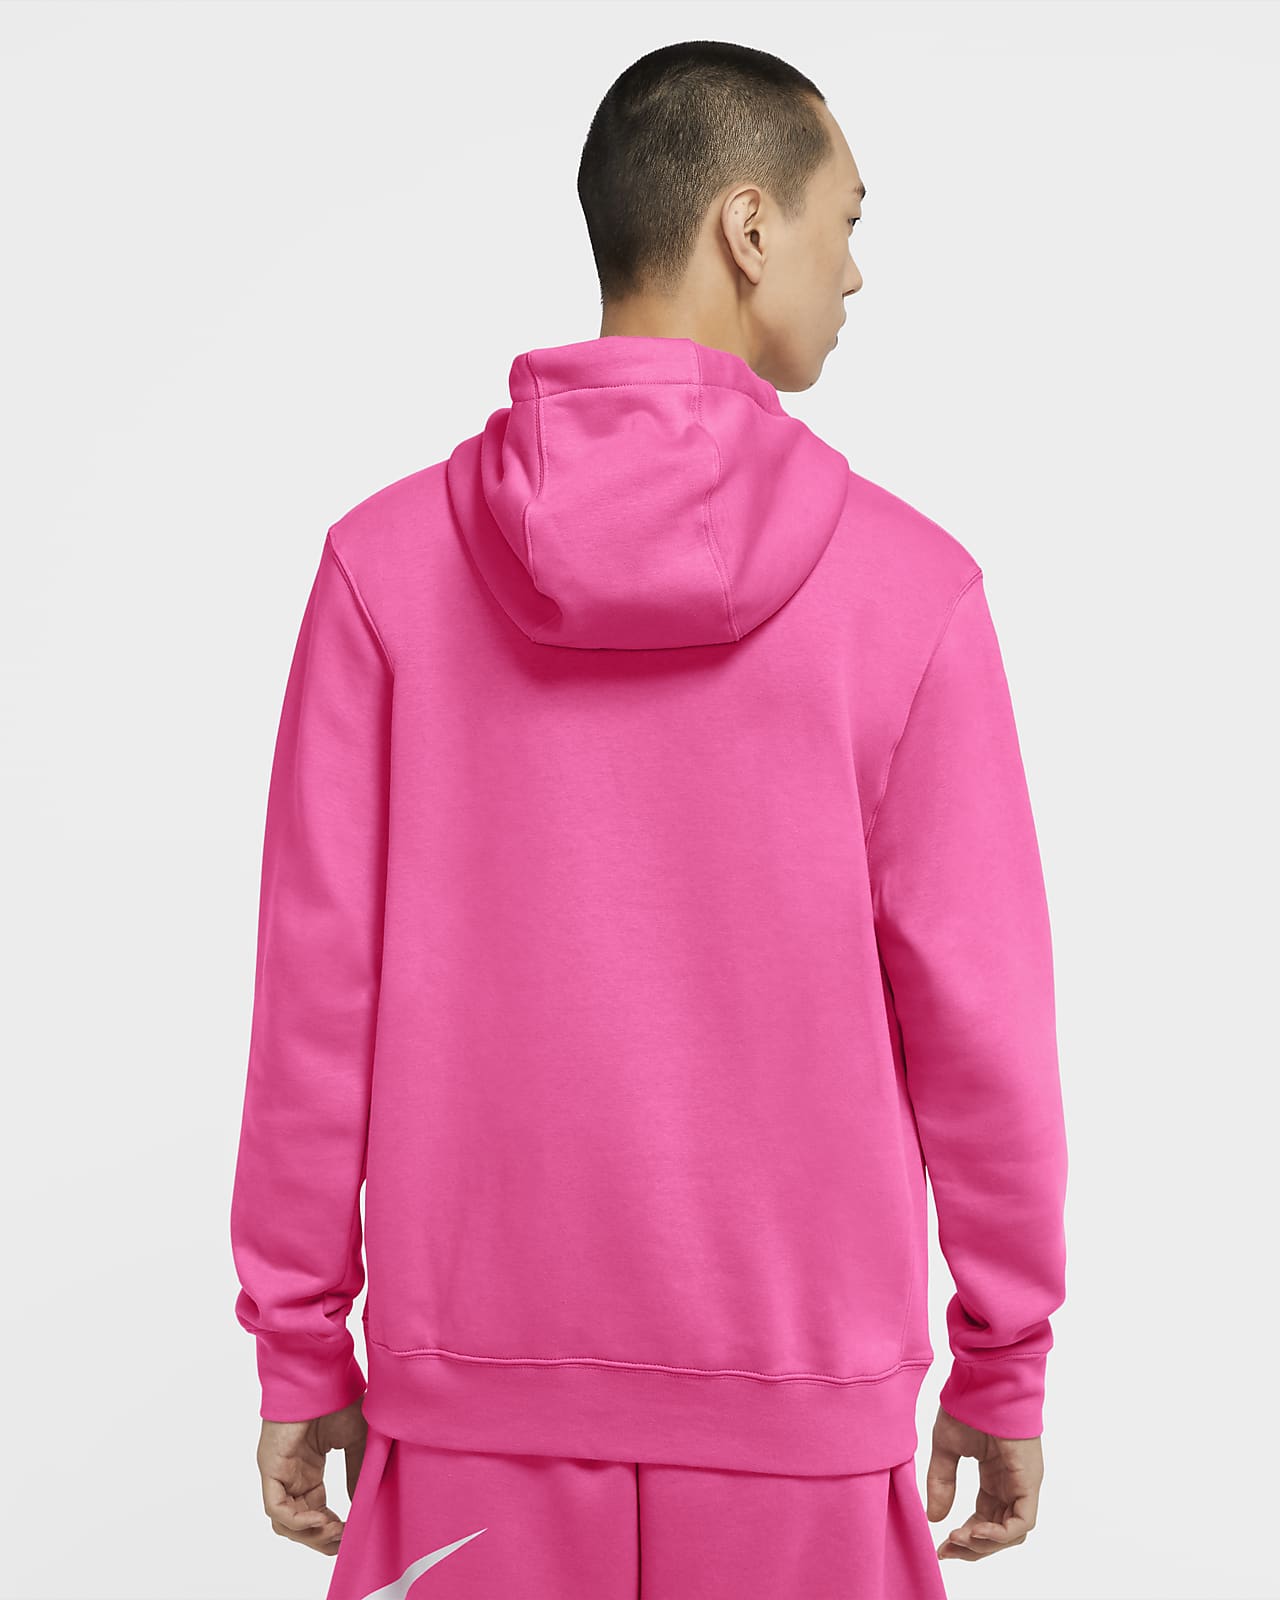 nike sportswear club fleece pink